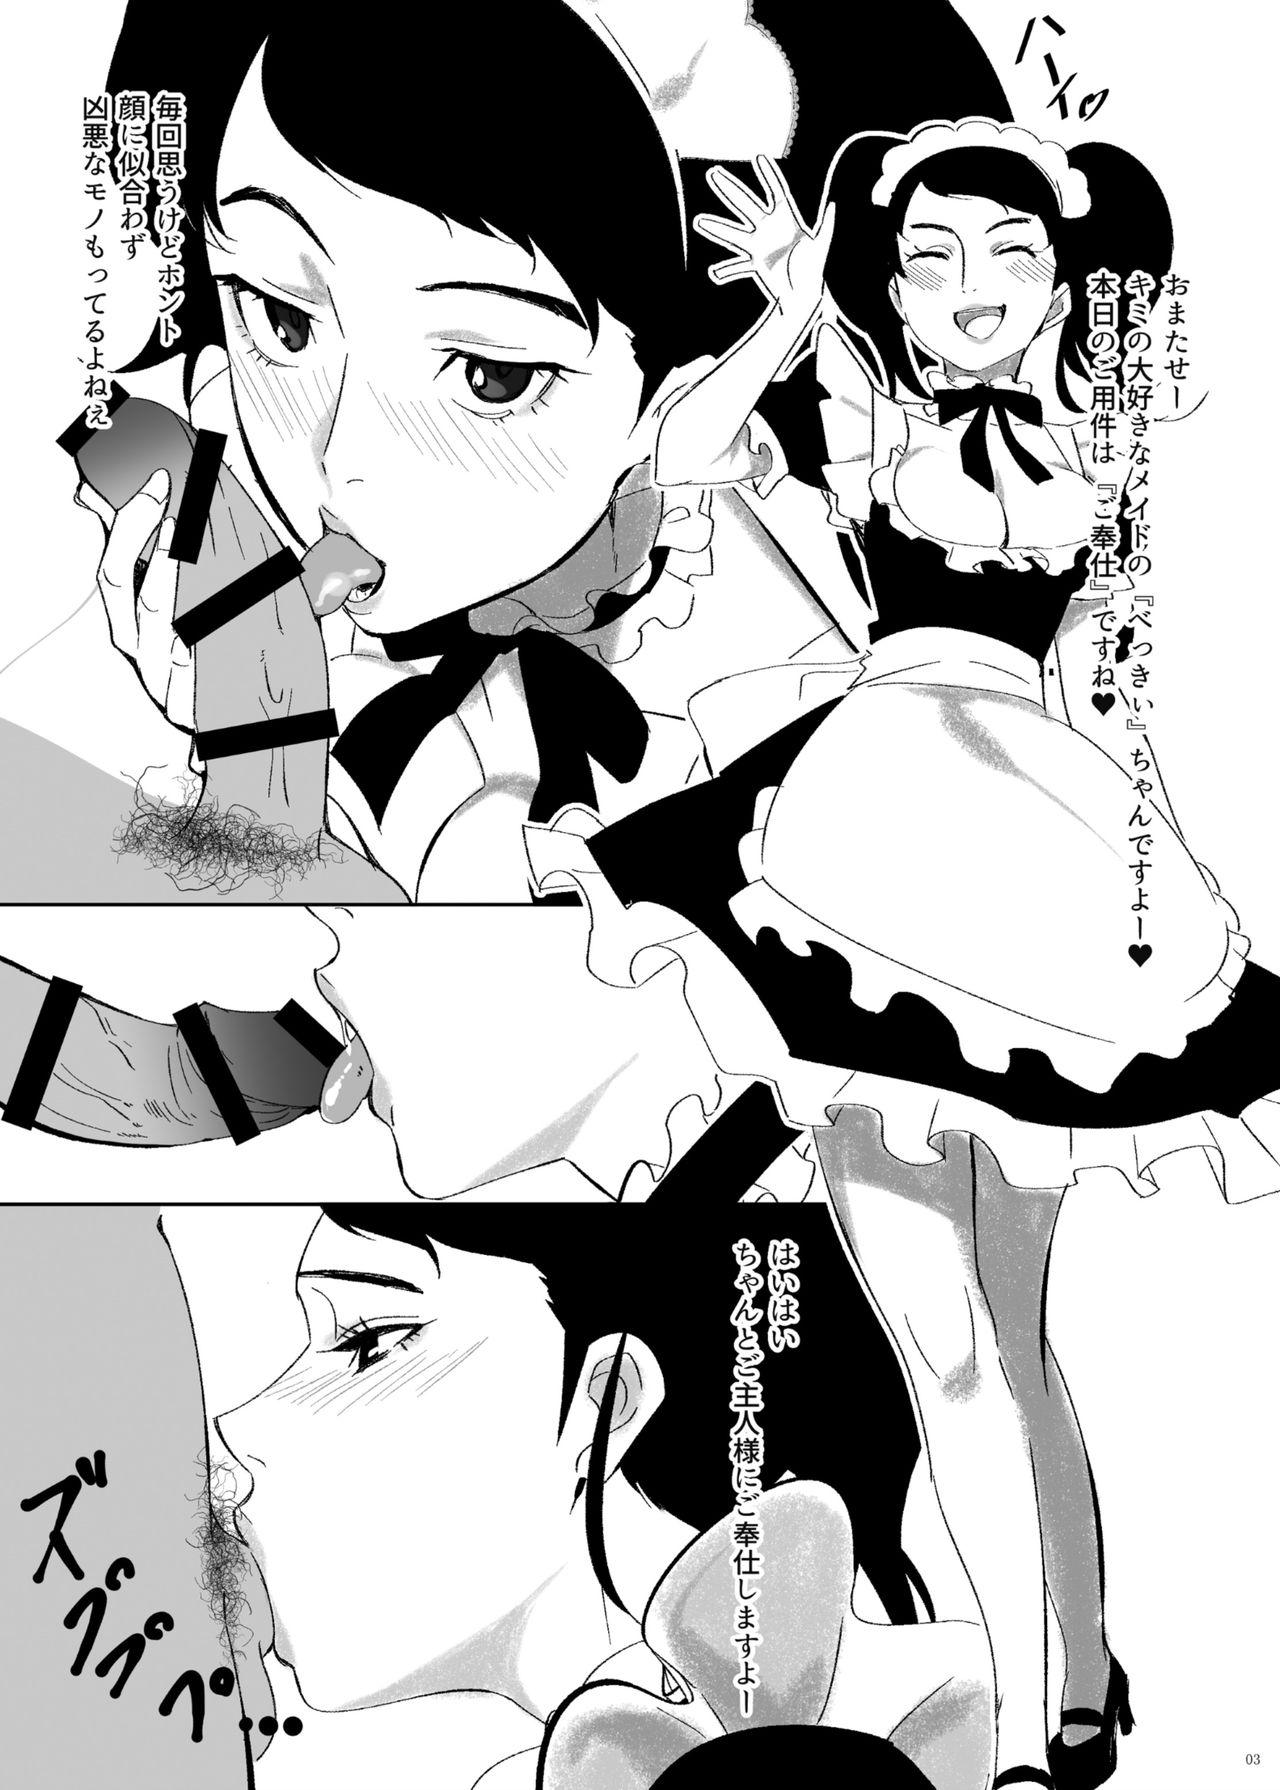 Perverted Konna Koto Suru no Kimi ni dake nan dakara - Persona 5 Anime - Page 3